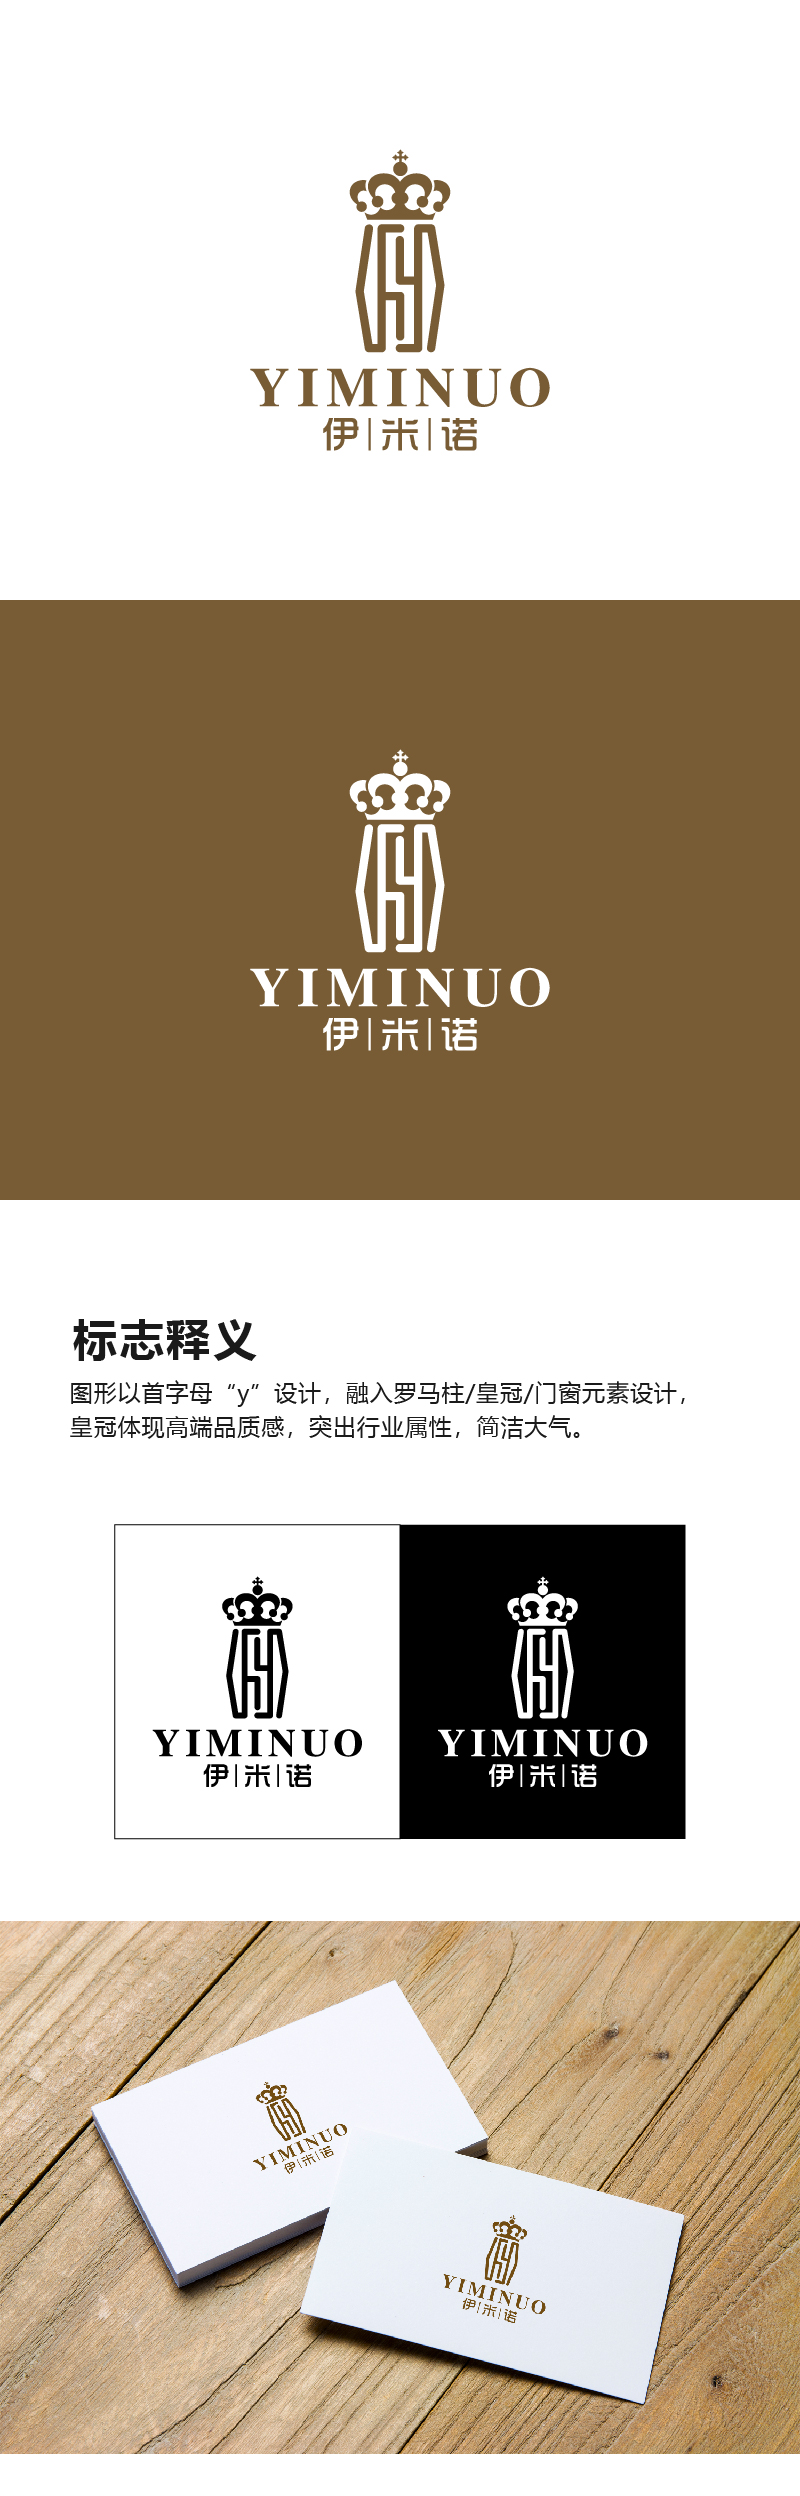 叶美宝的伊米诺铝合金门窗logo设计